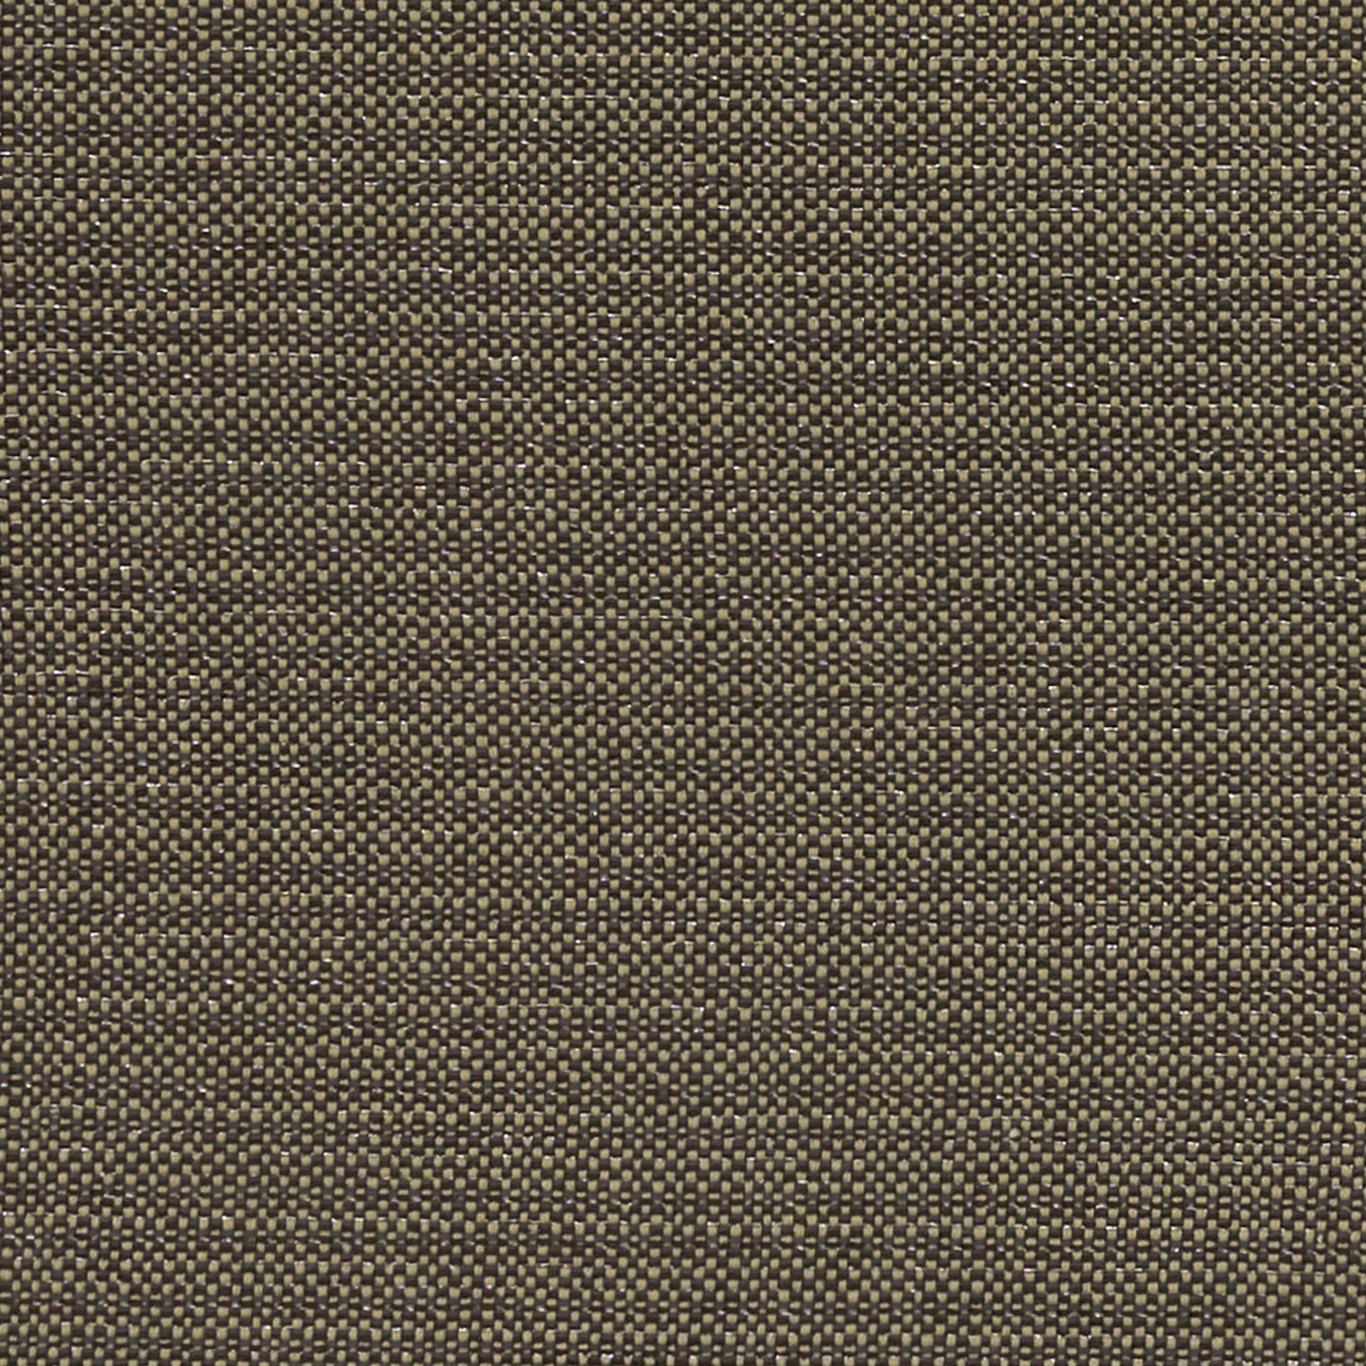 Kauai Charcoal Fabric by CNC